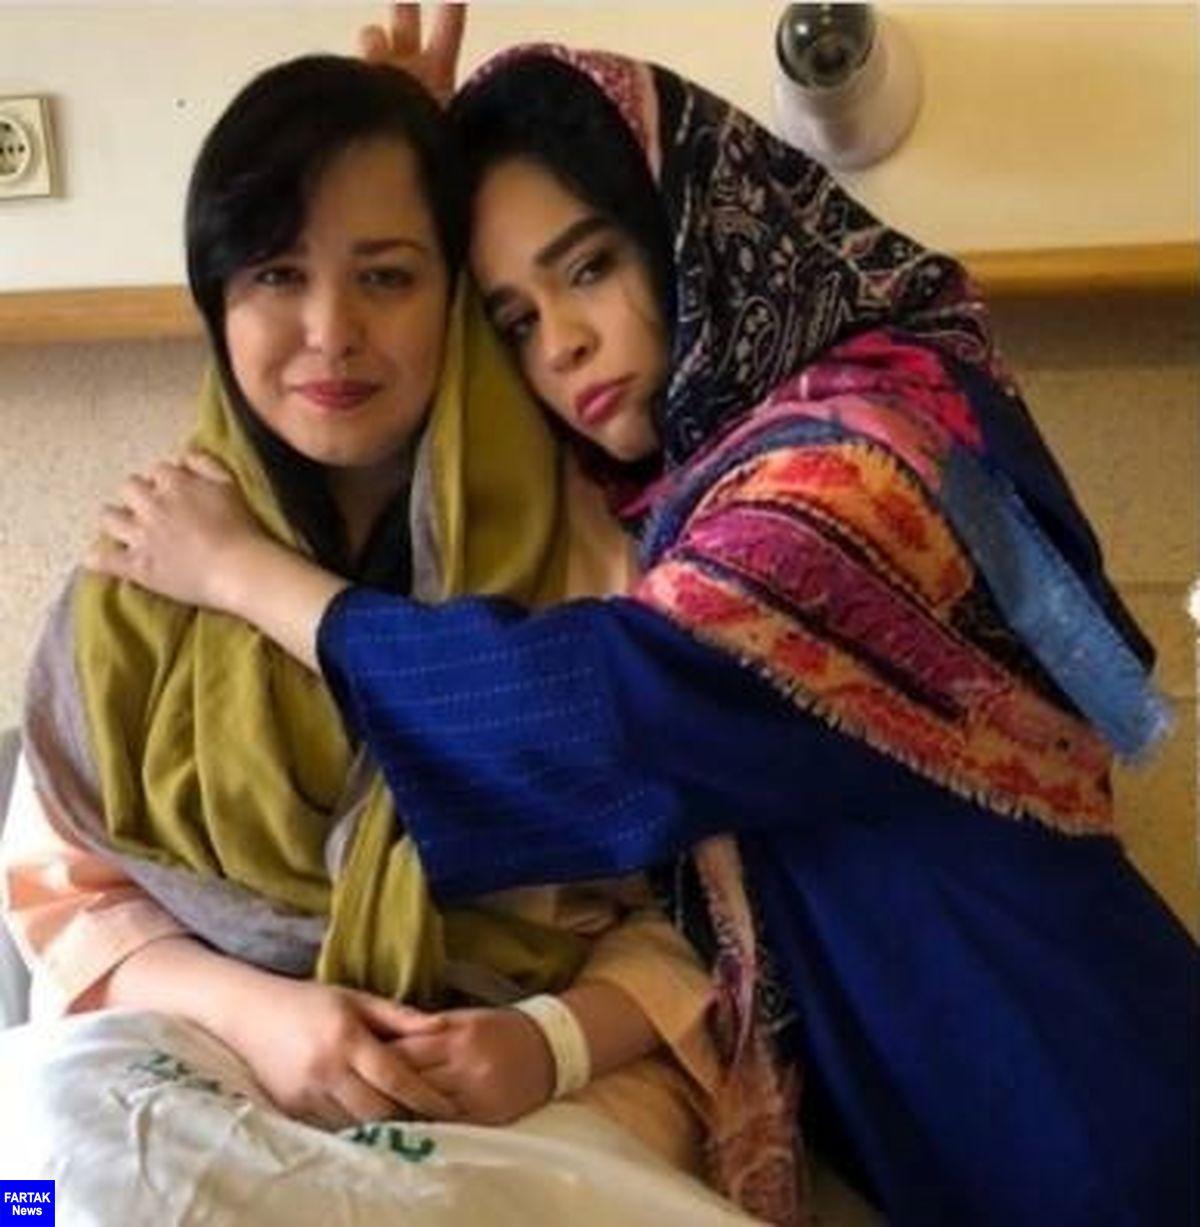 مهراوه شریفی نیا خودکشی کرد / تصاویر مهراوه در بیمارستان